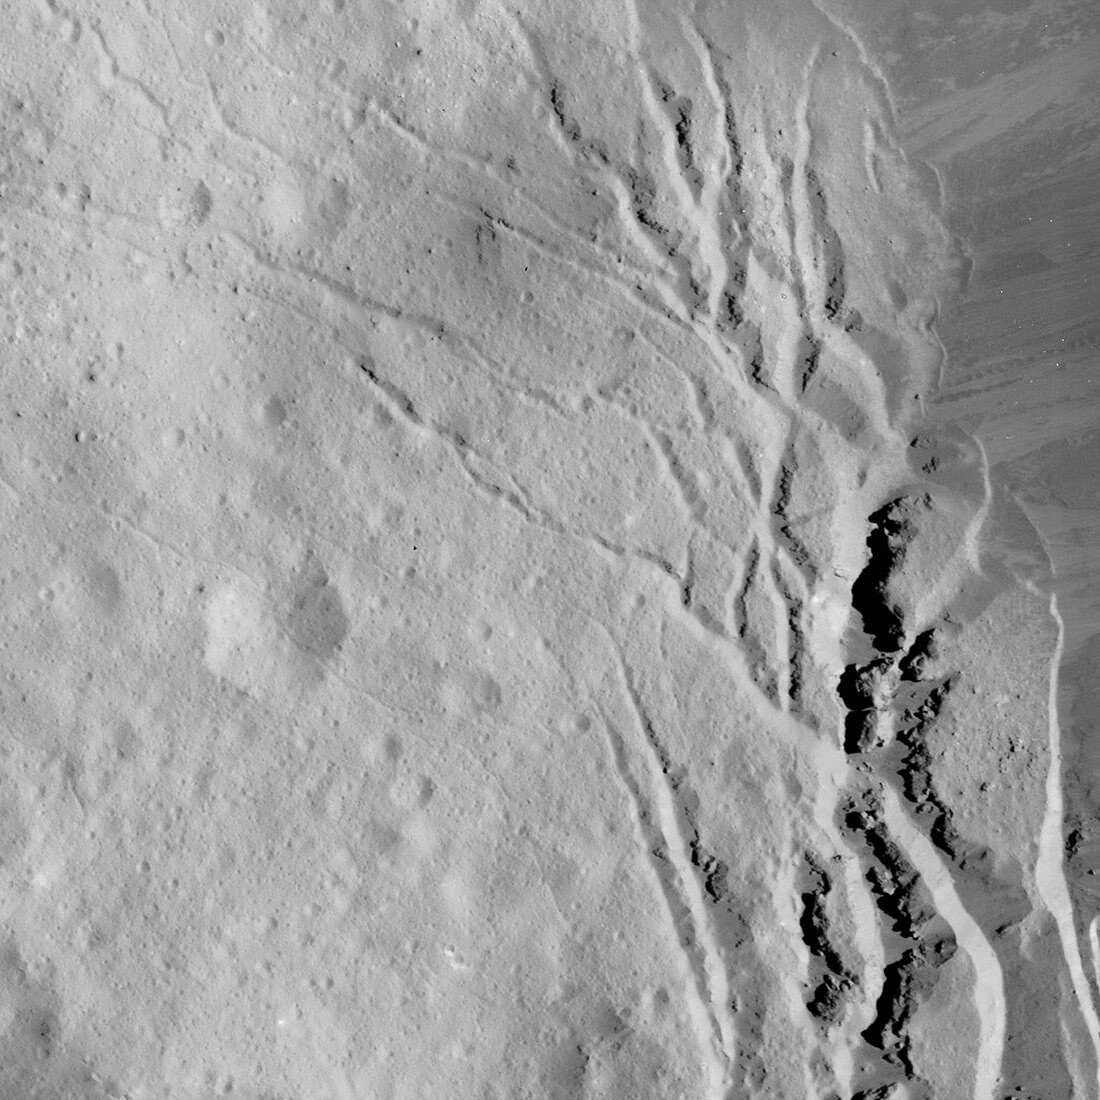 Occator Crater, Ceres, satellite image